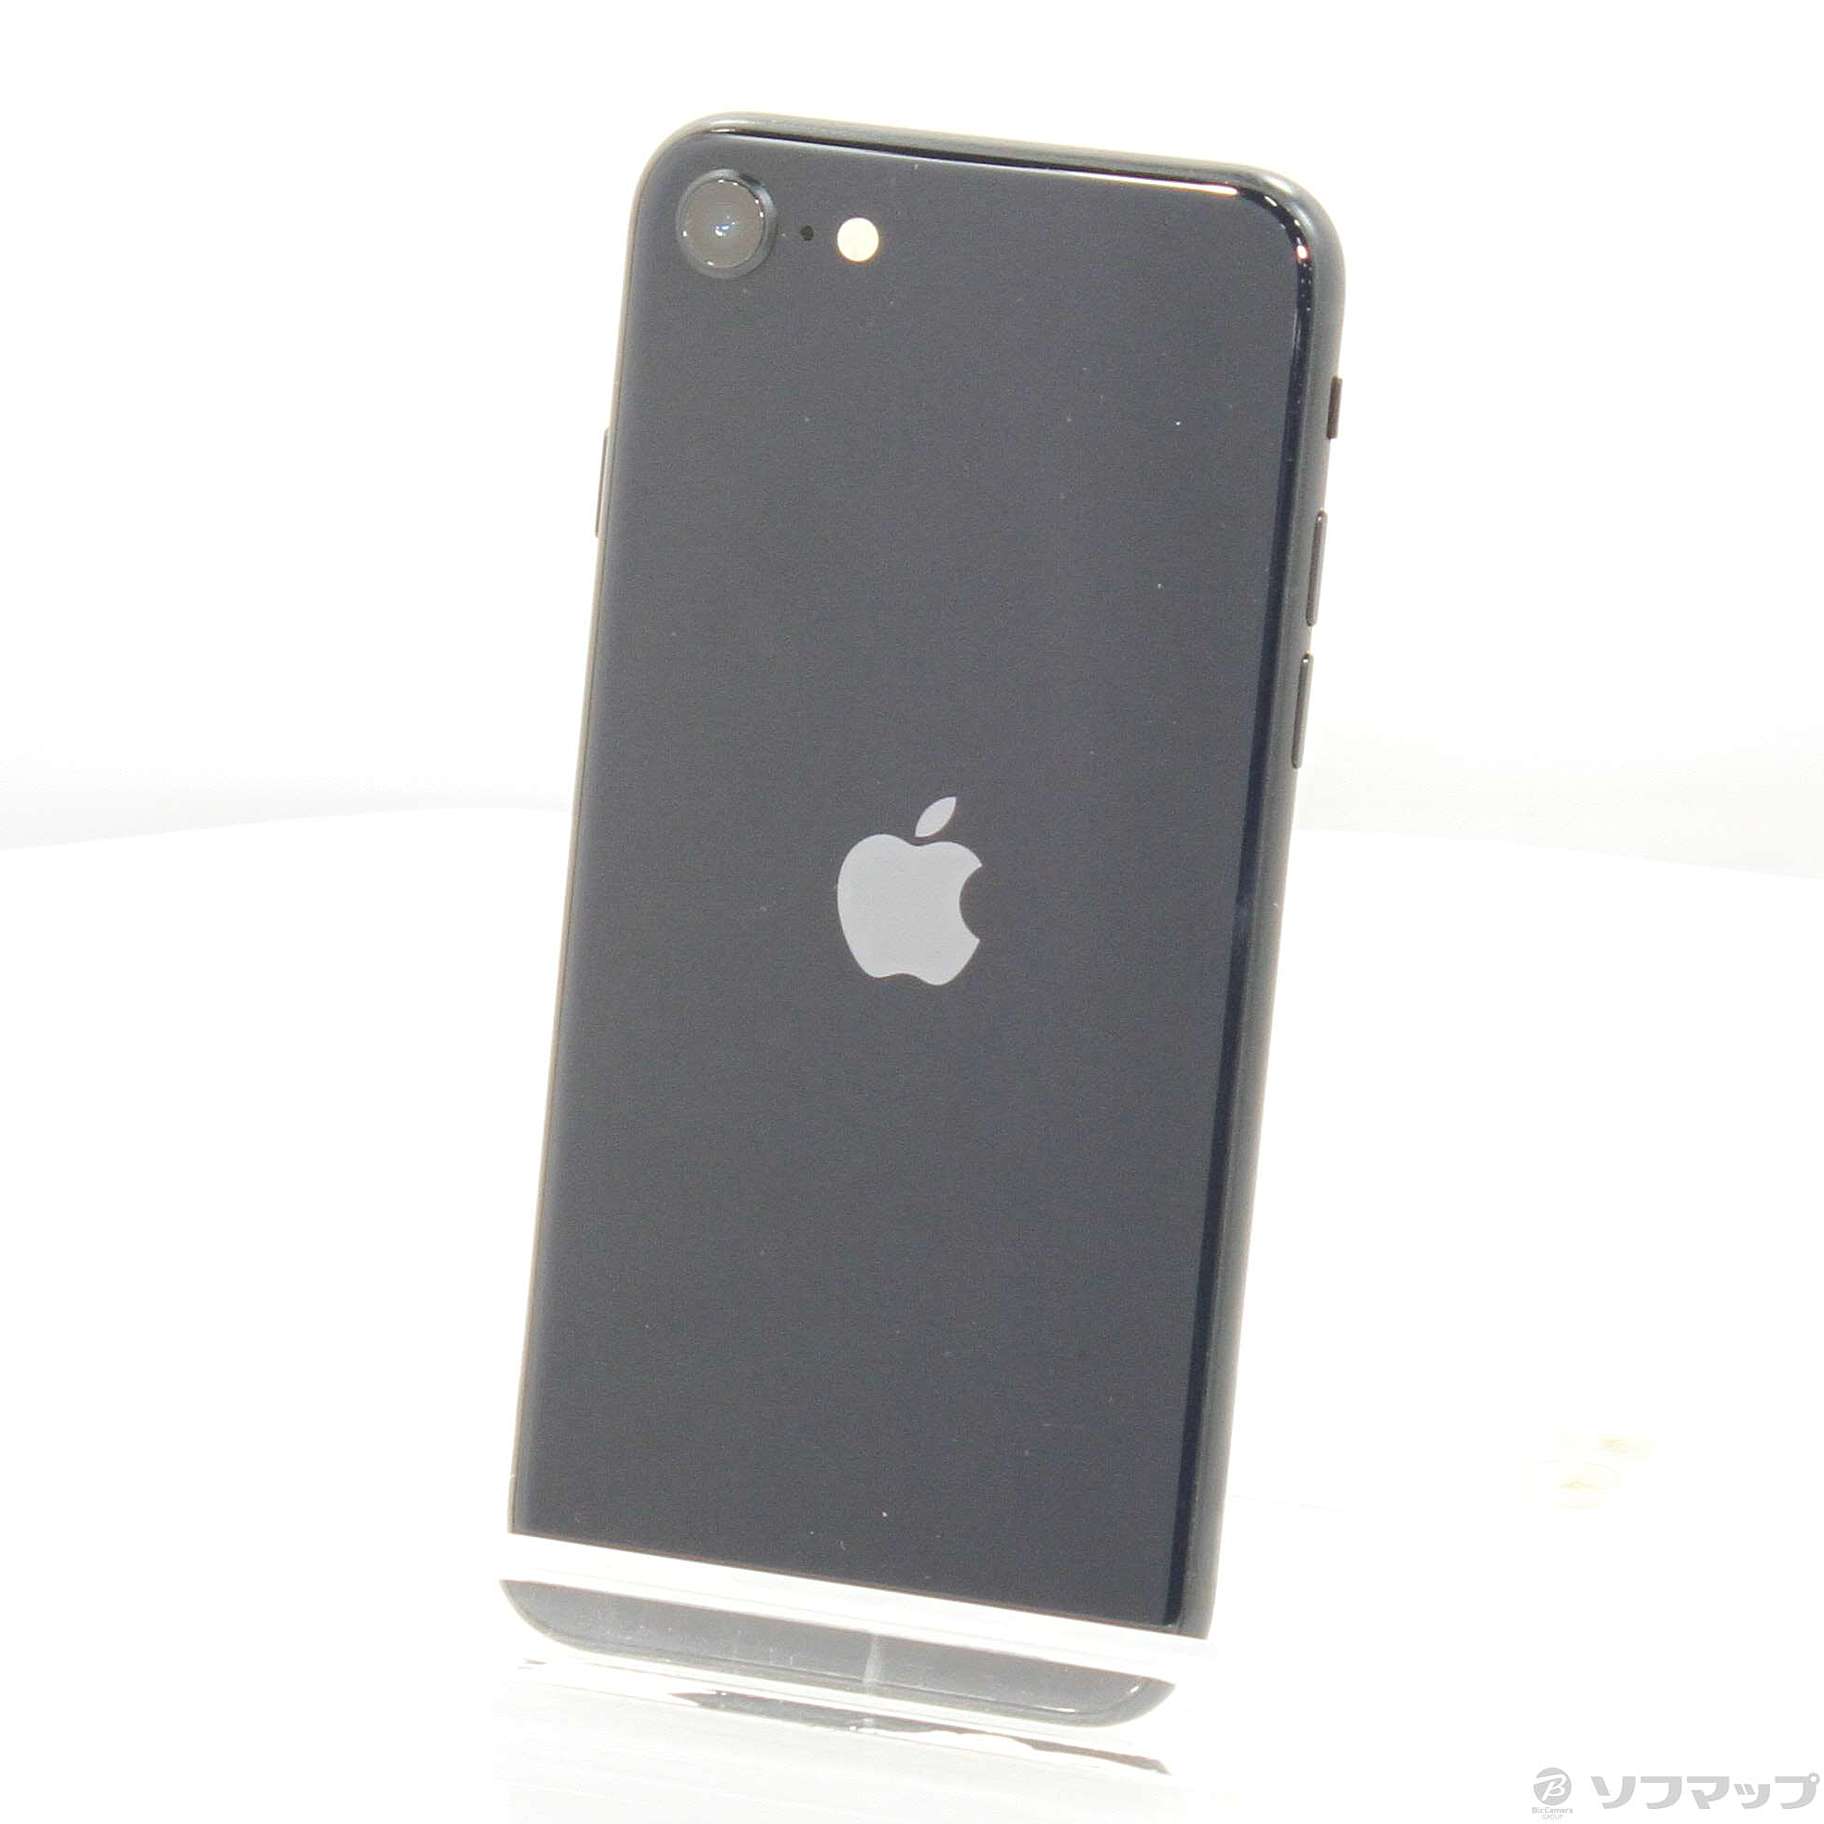 アップル iPhoneSE 第3世代 128GB ミッドナイト 黒アップル | rongviettravel.com - スマートフォン本体